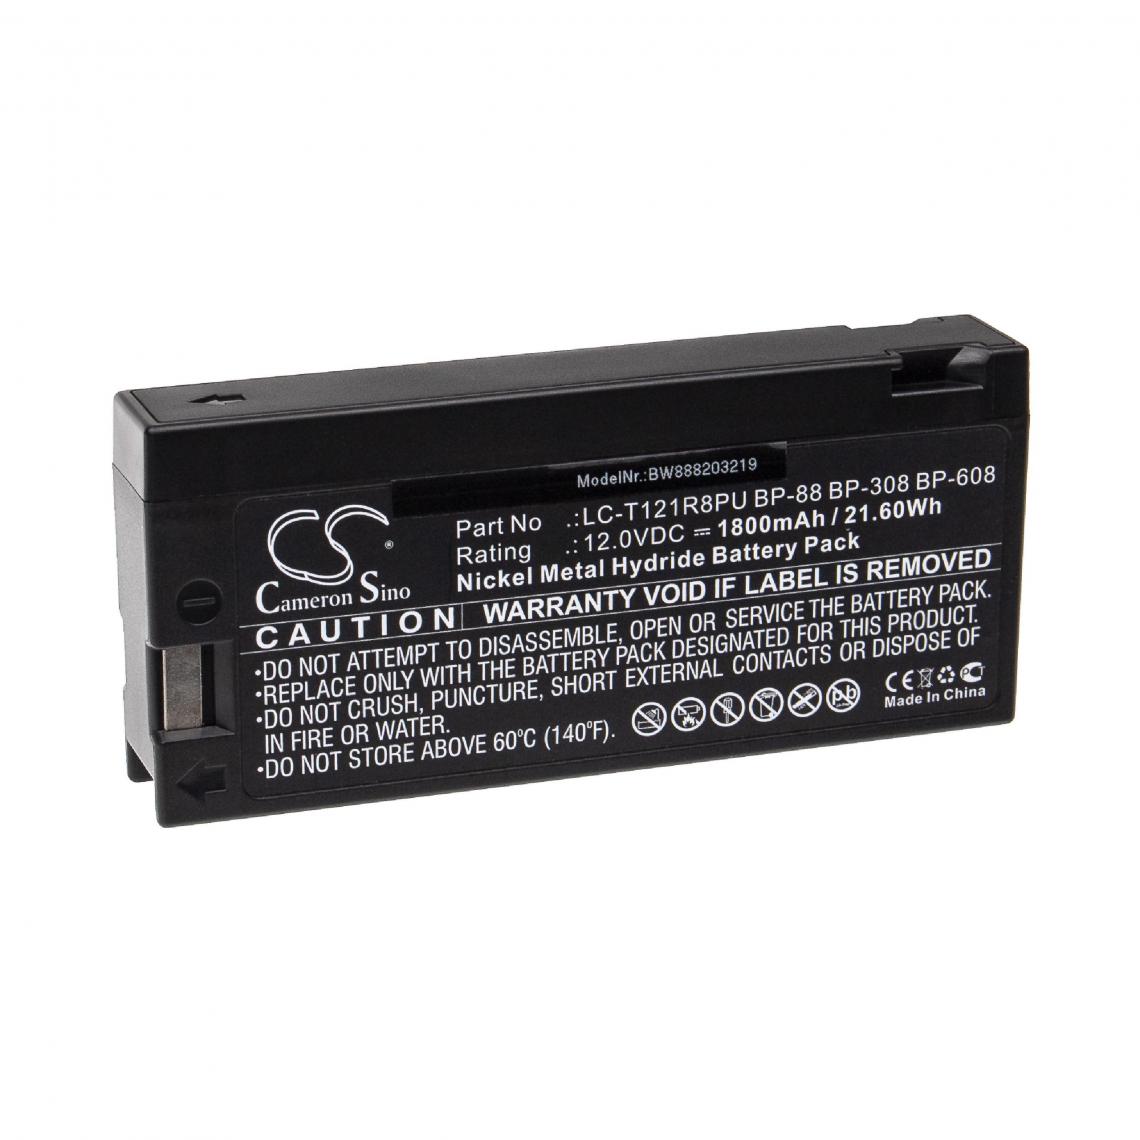 Vhbw - vhbw Batterie compatible avec MAGNAVOX CVR-335AV, V80096BK01, VHS-130 appareil médical (1800mAh, 12V, NiMH) - Piles spécifiques